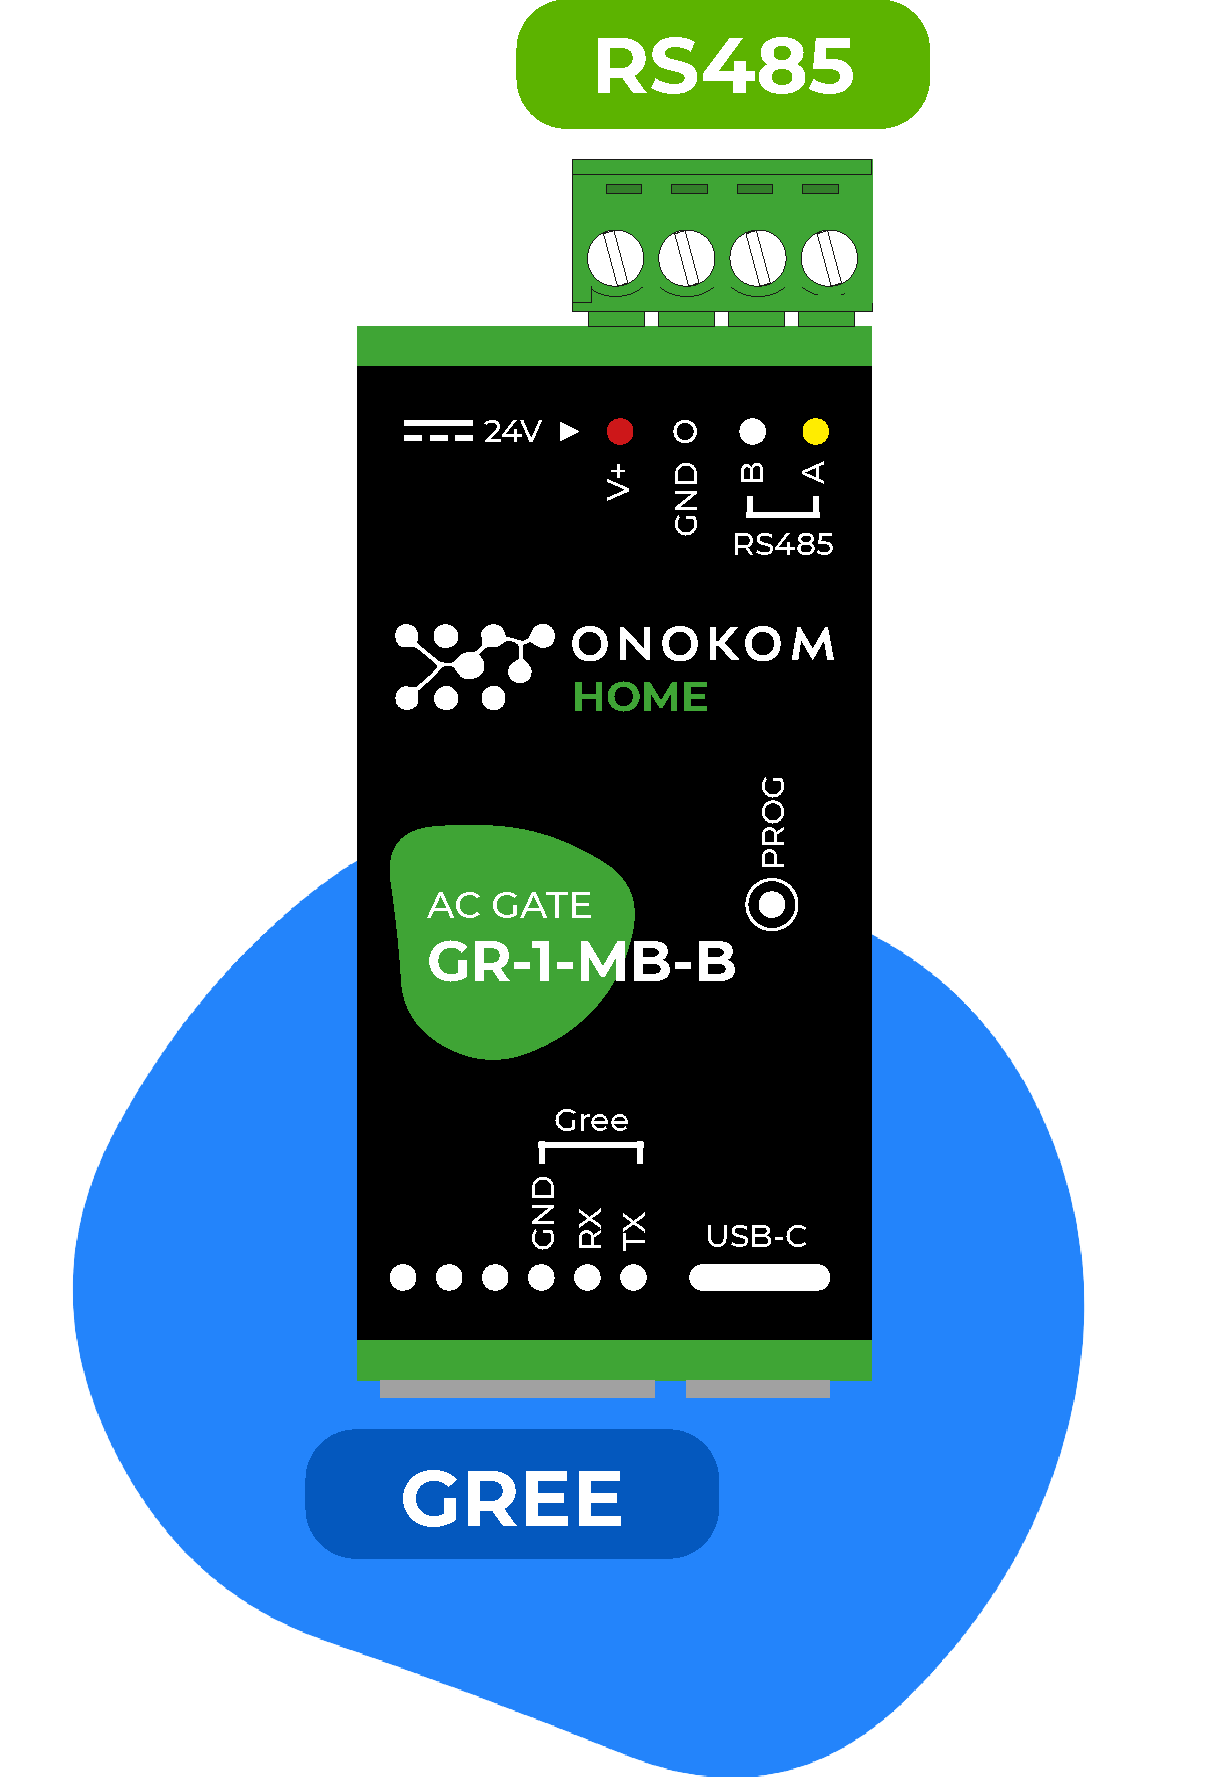 Для управления кондиционерами Gree используется шлюз ONOKOM GR-1-MB-B